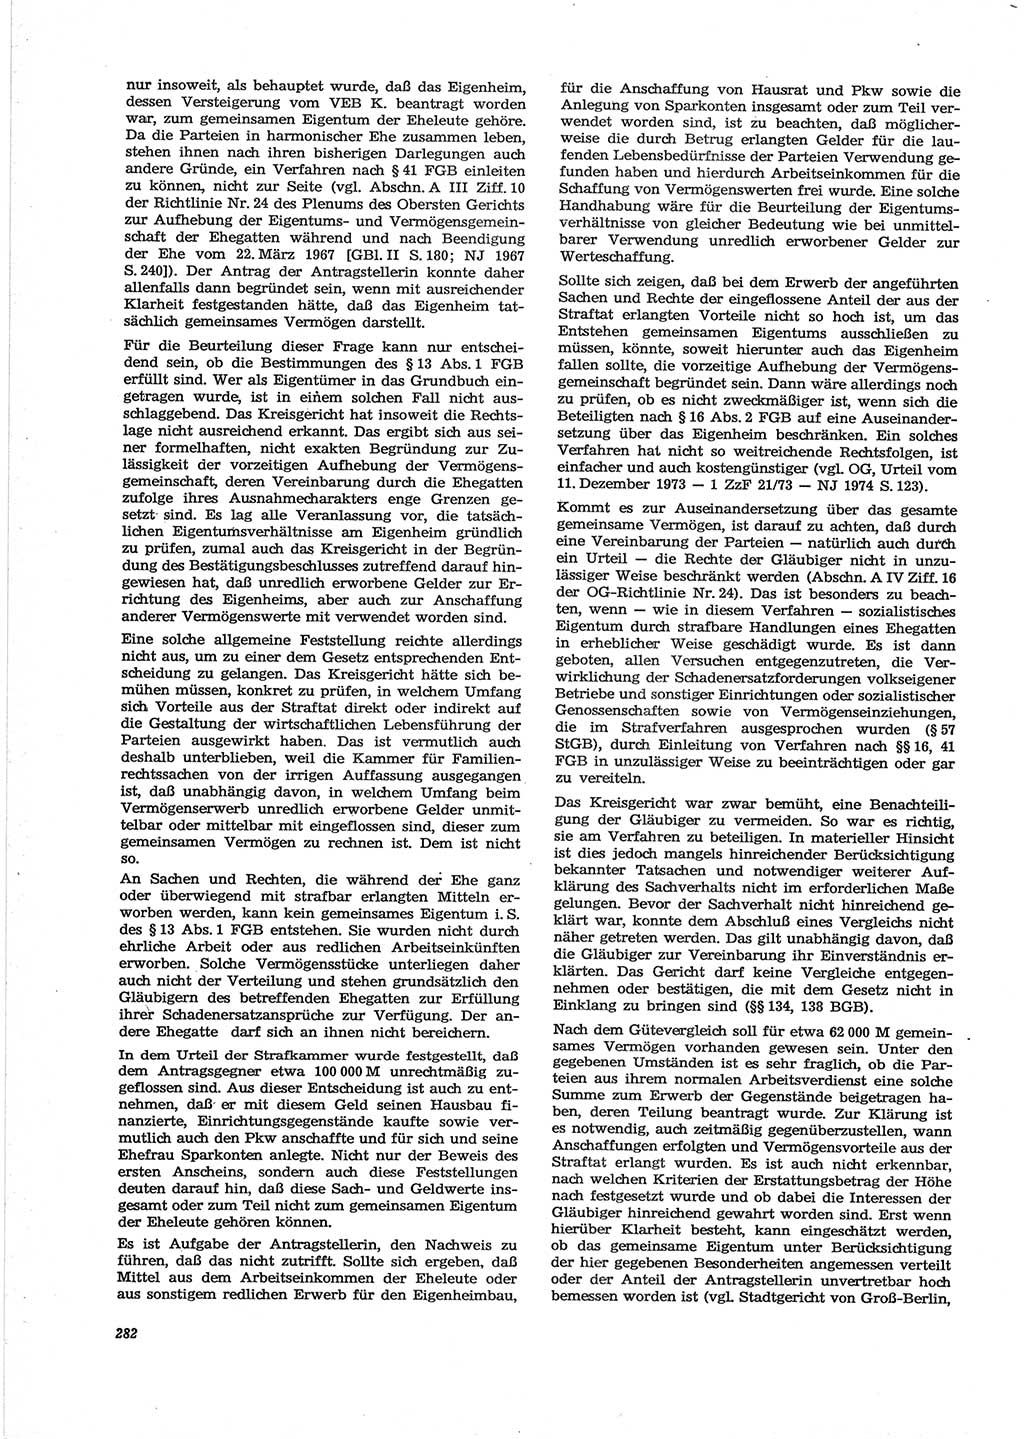 Neue Justiz (NJ), Zeitschrift für Recht und Rechtswissenschaft [Deutsche Demokratische Republik (DDR)], 28. Jahrgang 1974, Seite 282 (NJ DDR 1974, S. 282)